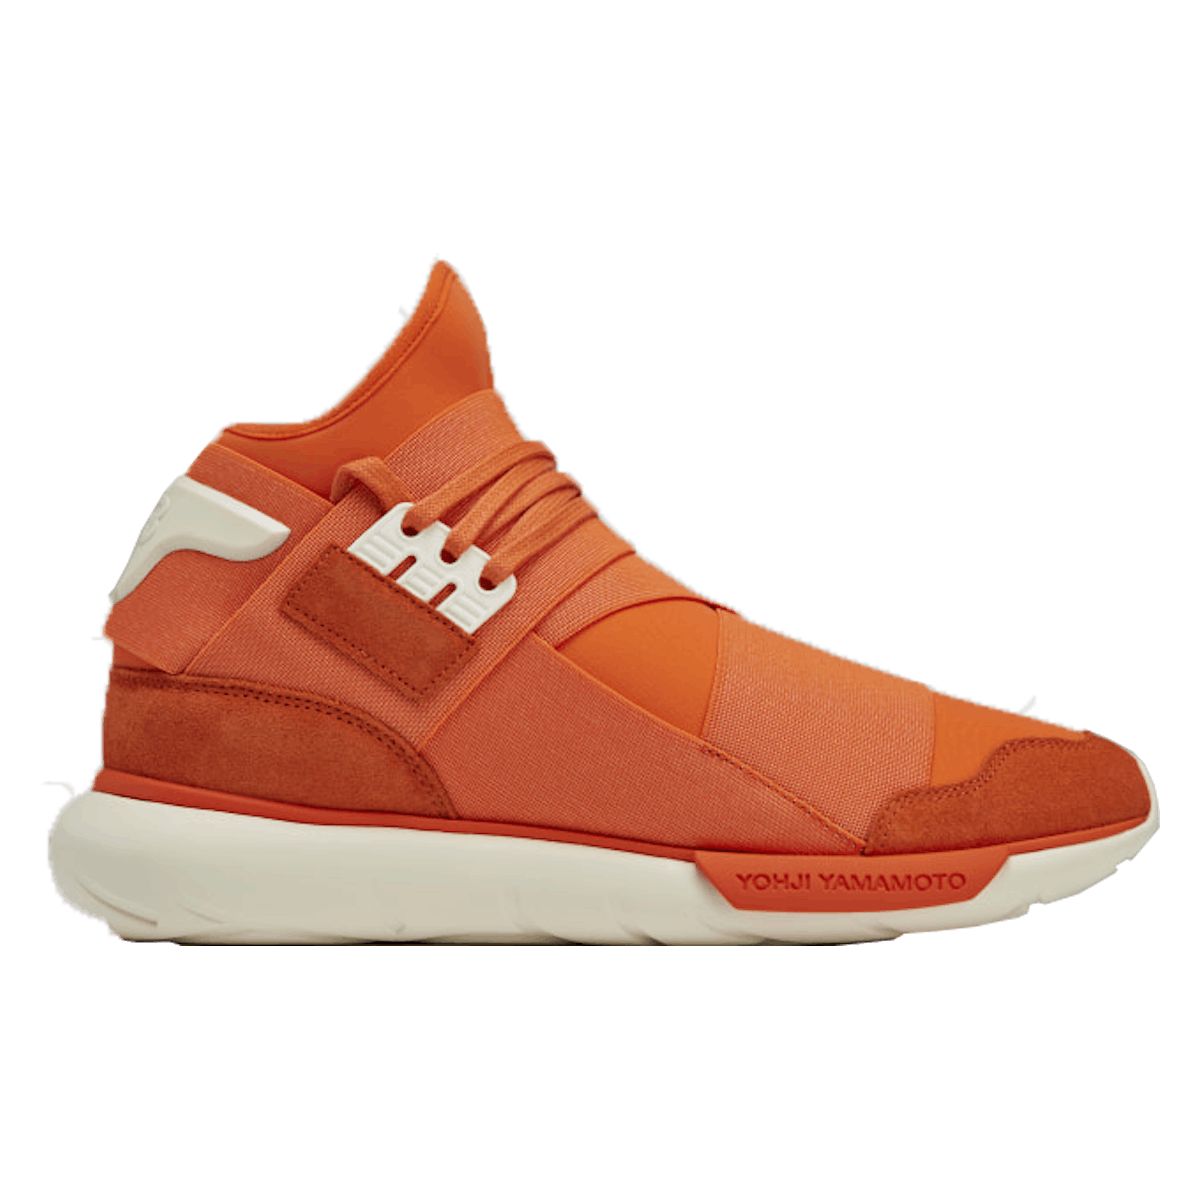 Adidas Y-3 Qasa High "Orange"